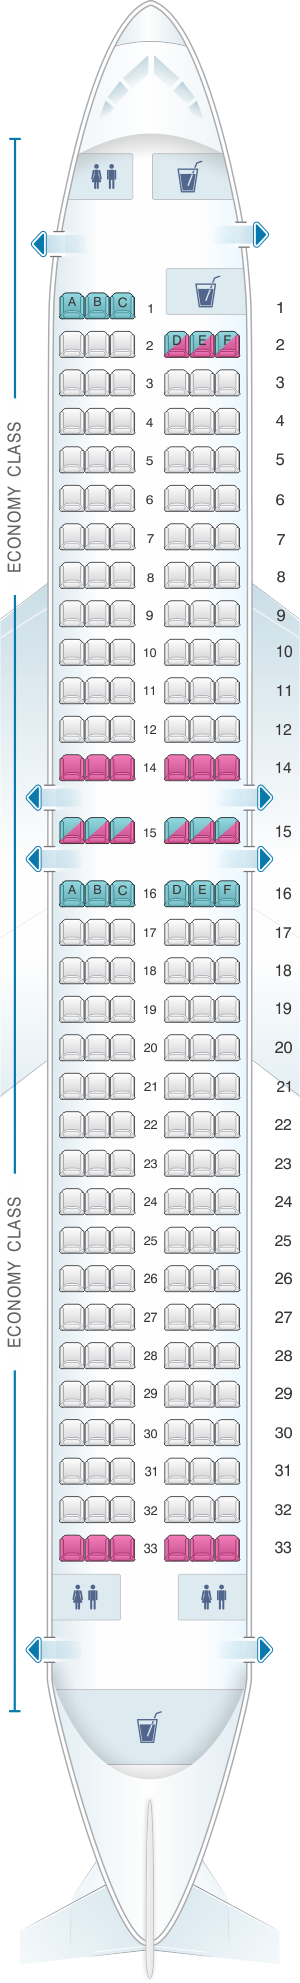 14+ Jet2 boeing 737 300 seating plan